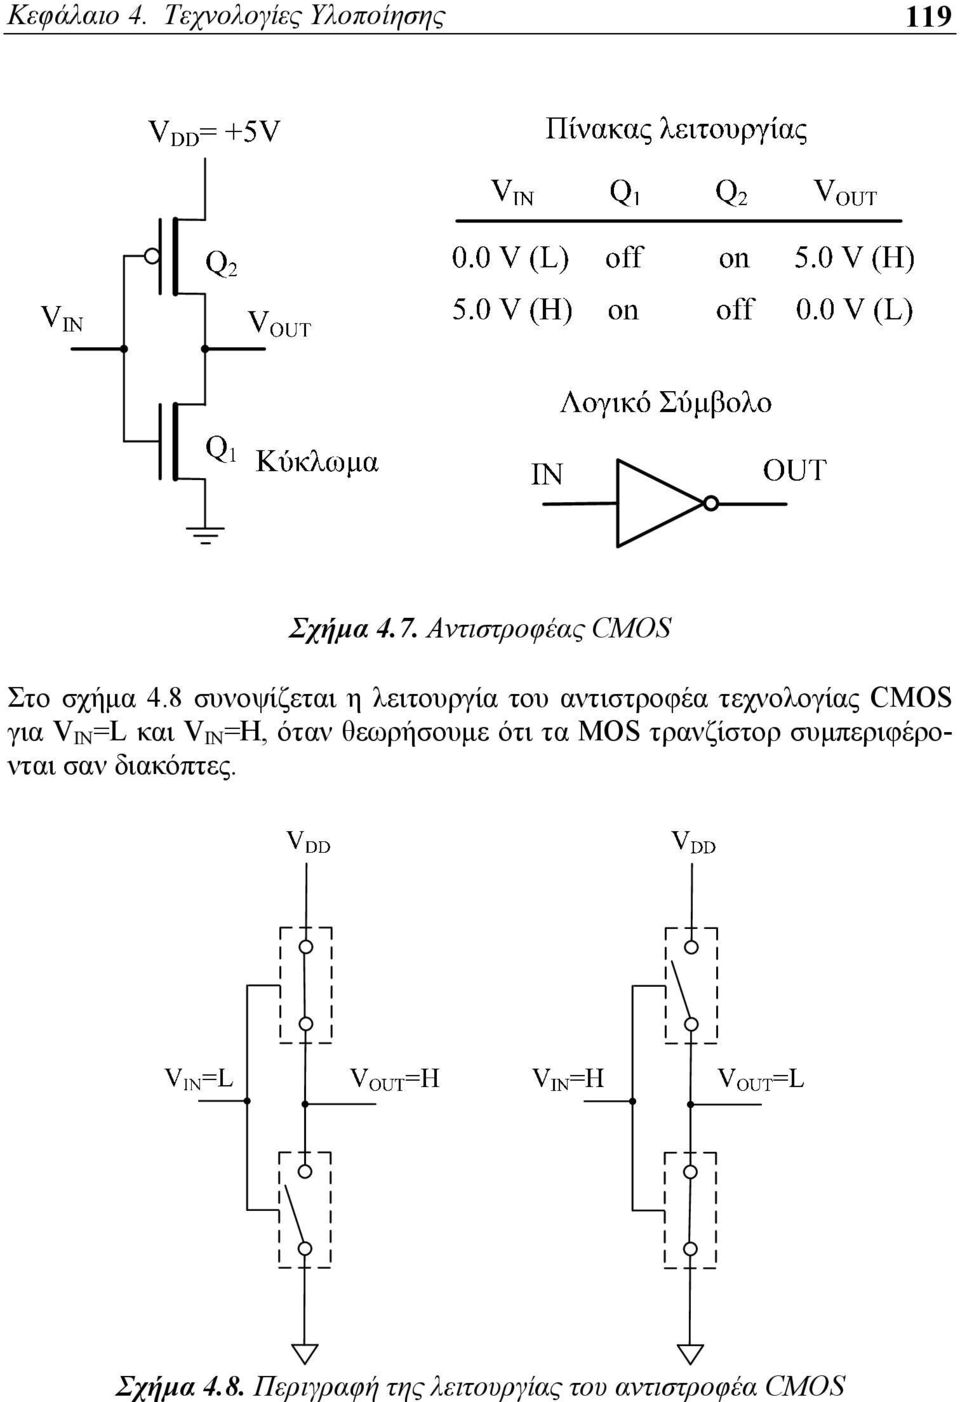 8 συνοψίζεται η λειτουργία του αντιστροφέα τεχνολογίας CMOS για V IN =L